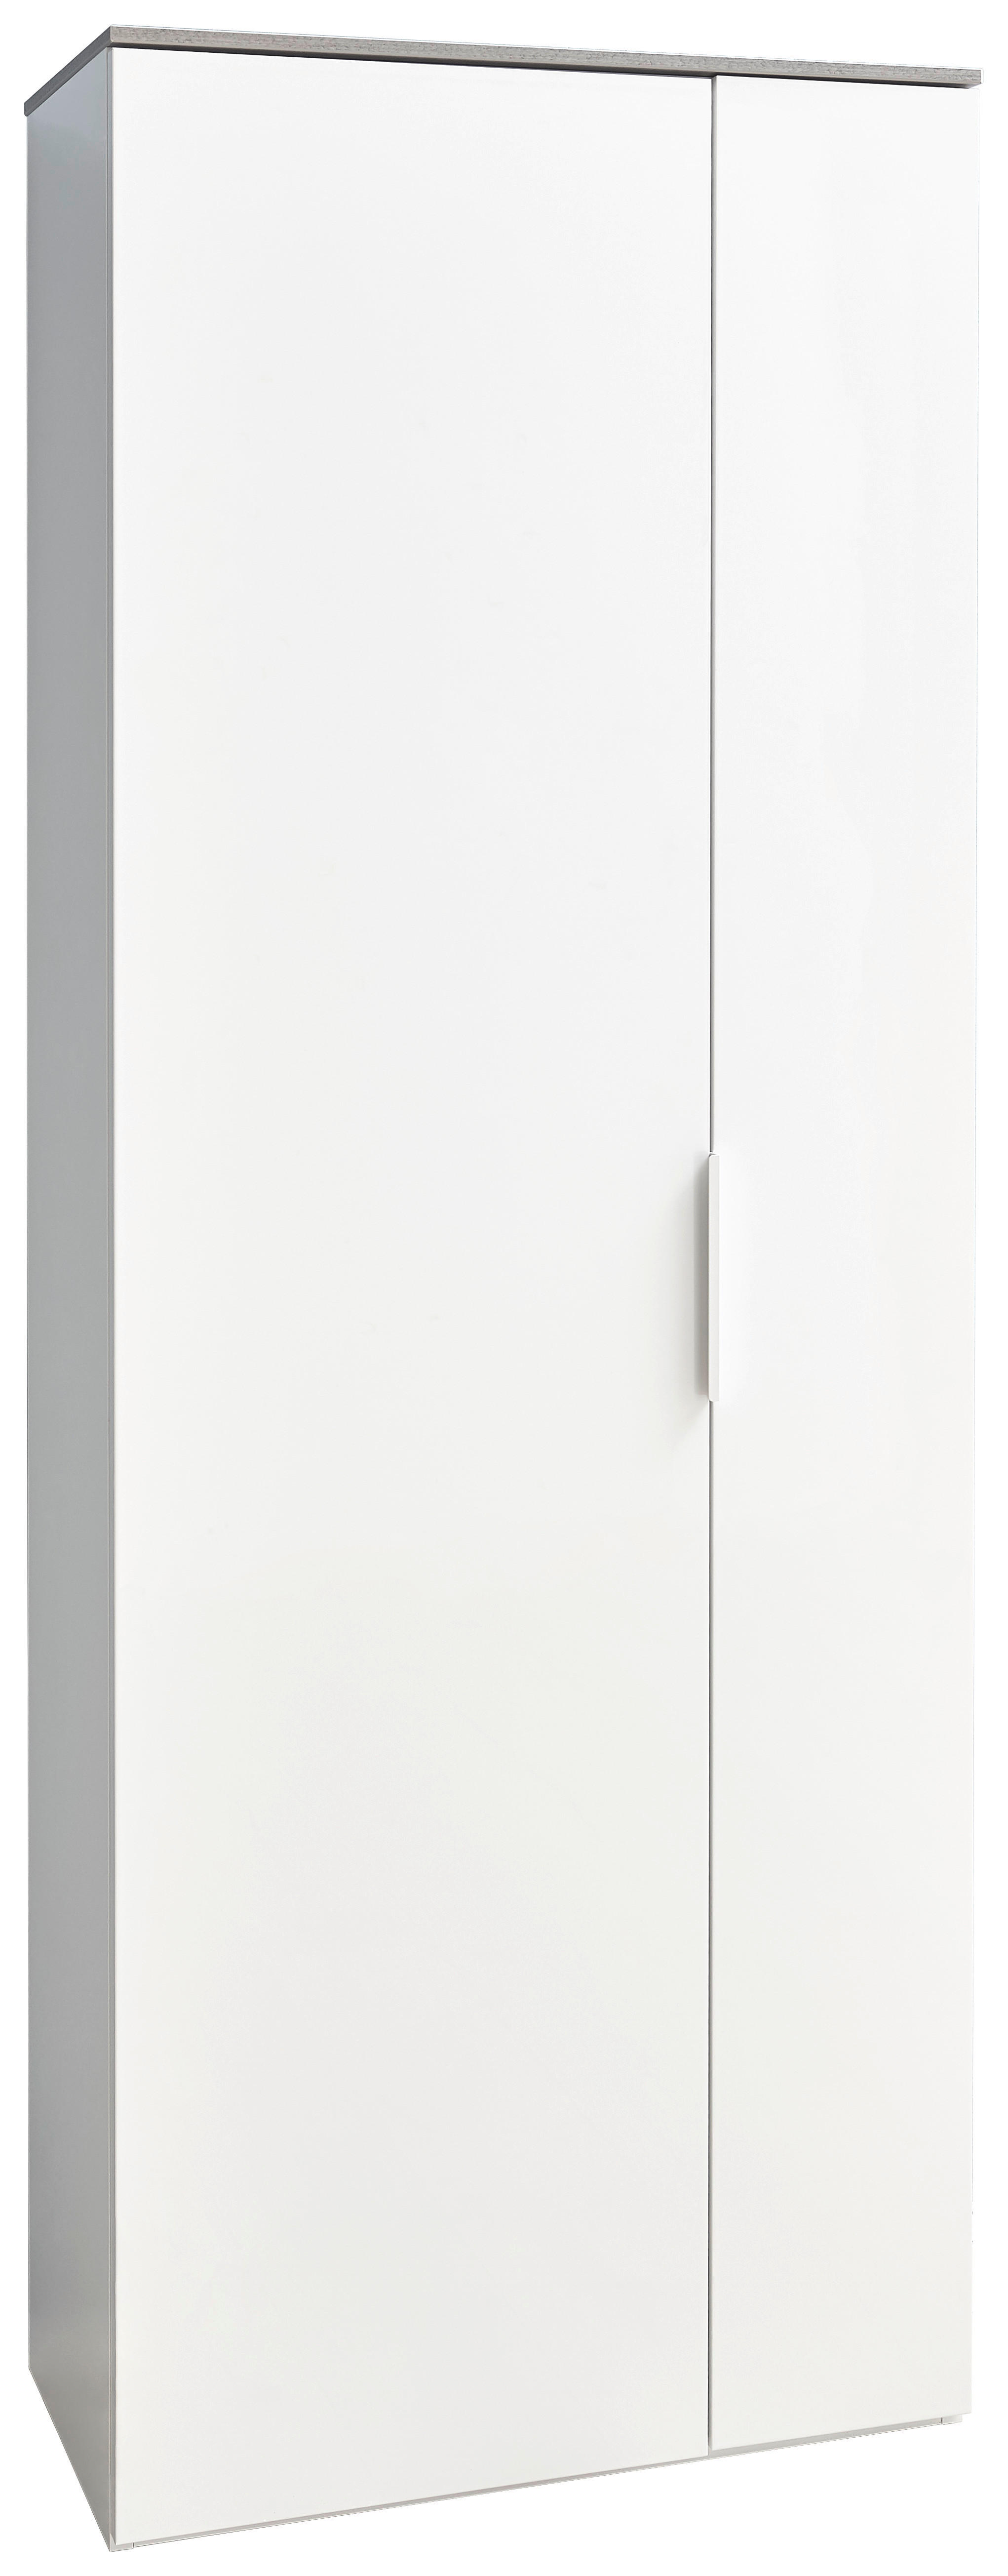 GARDEROBENSCHRANK 70/188/35 cm  - Alufarben/Weiß, Design, Holzwerkstoff/Metall (70/188/35cm) - Carryhome